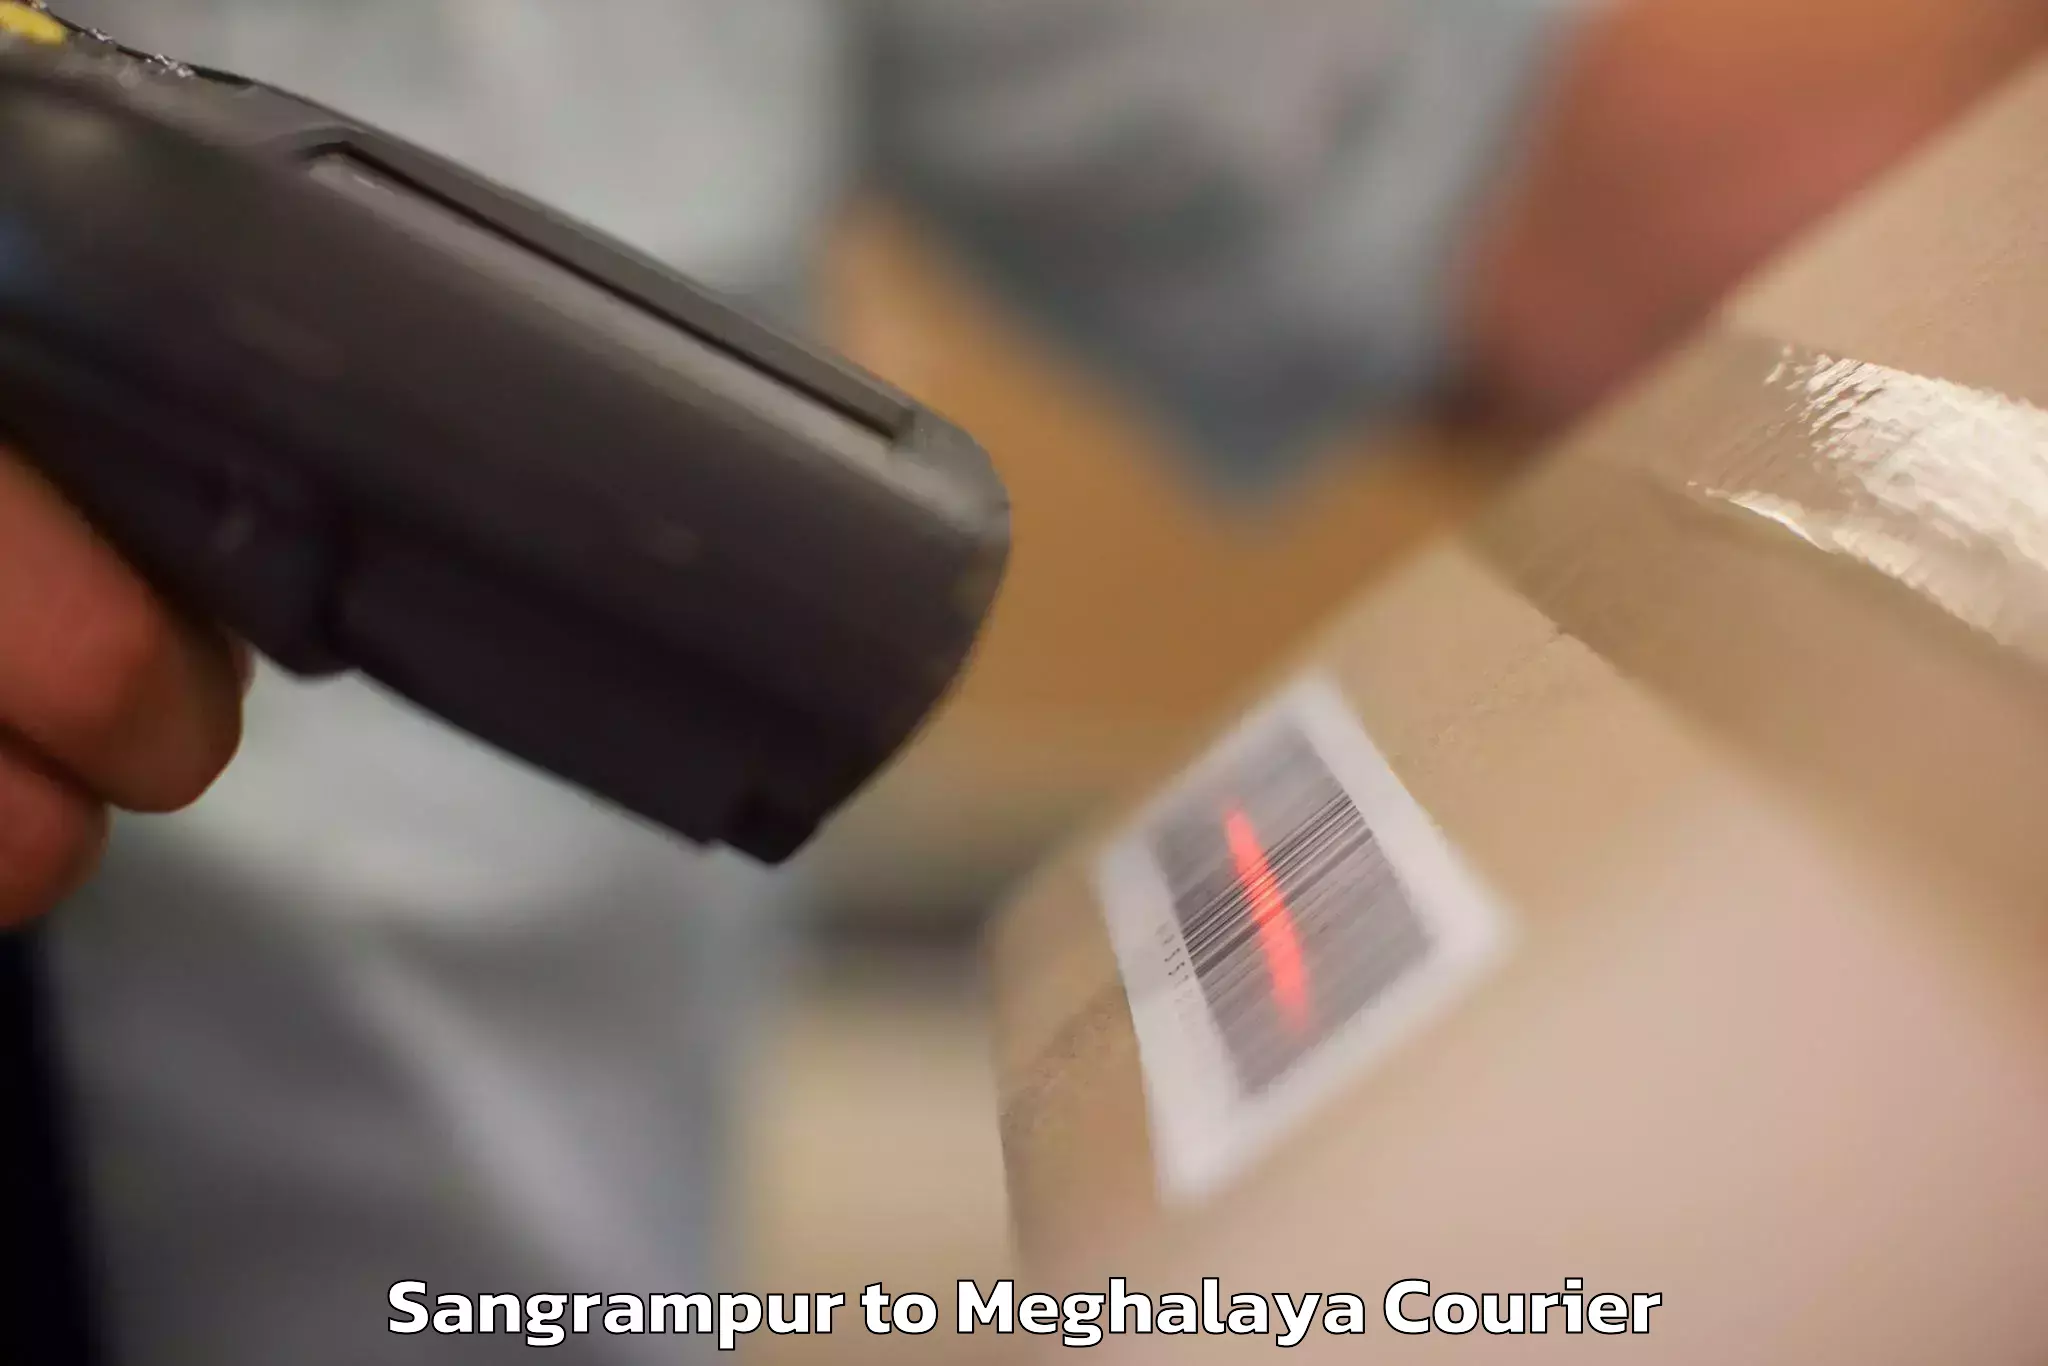 Personal effects shipping Sangrampur to Meghalaya